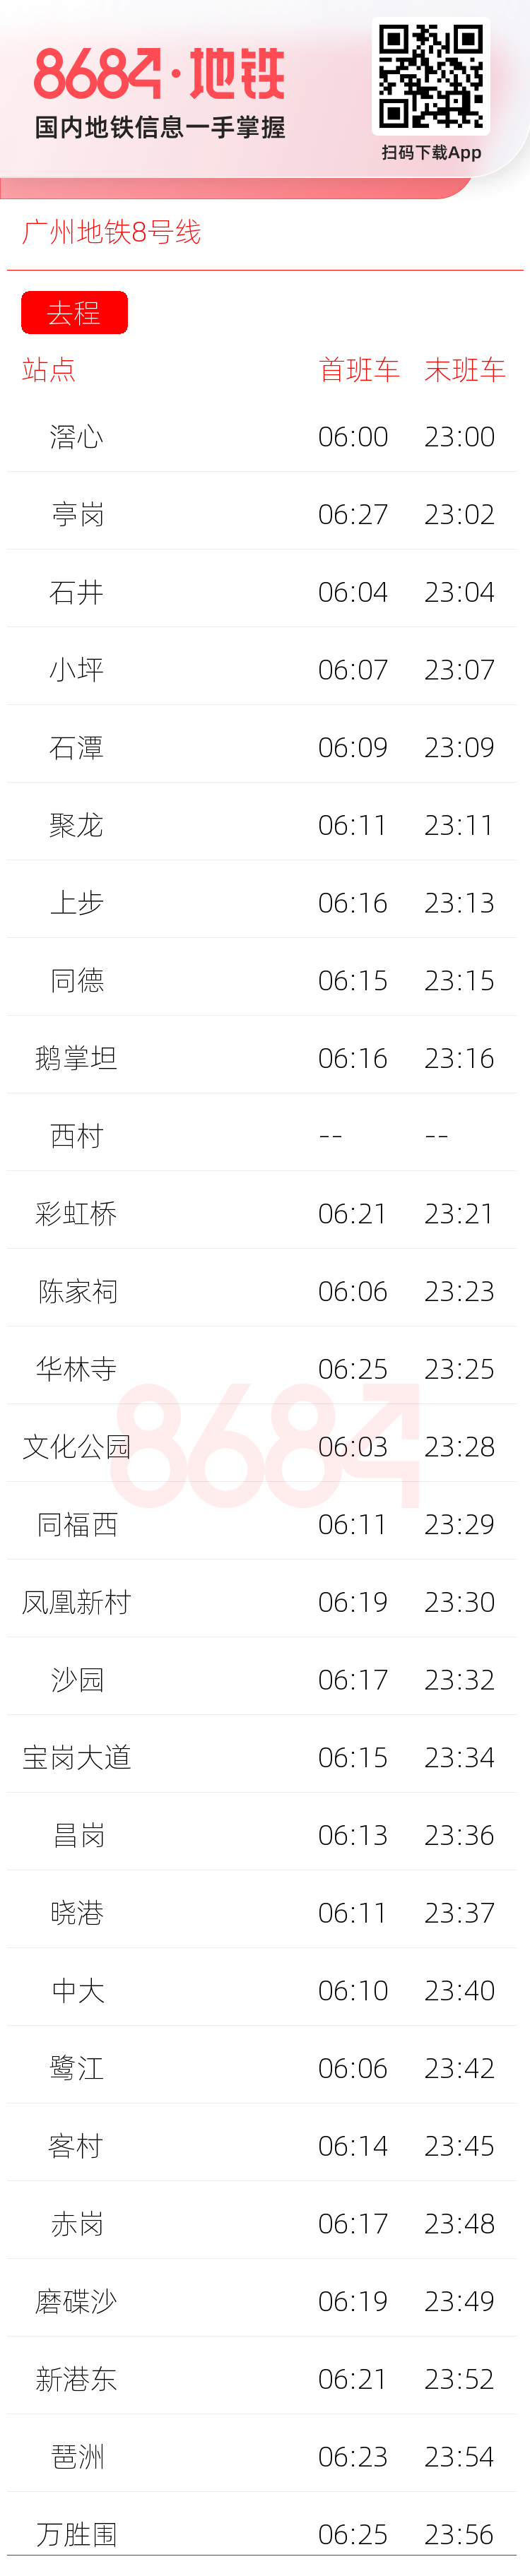 广州地铁8号线运营时间表